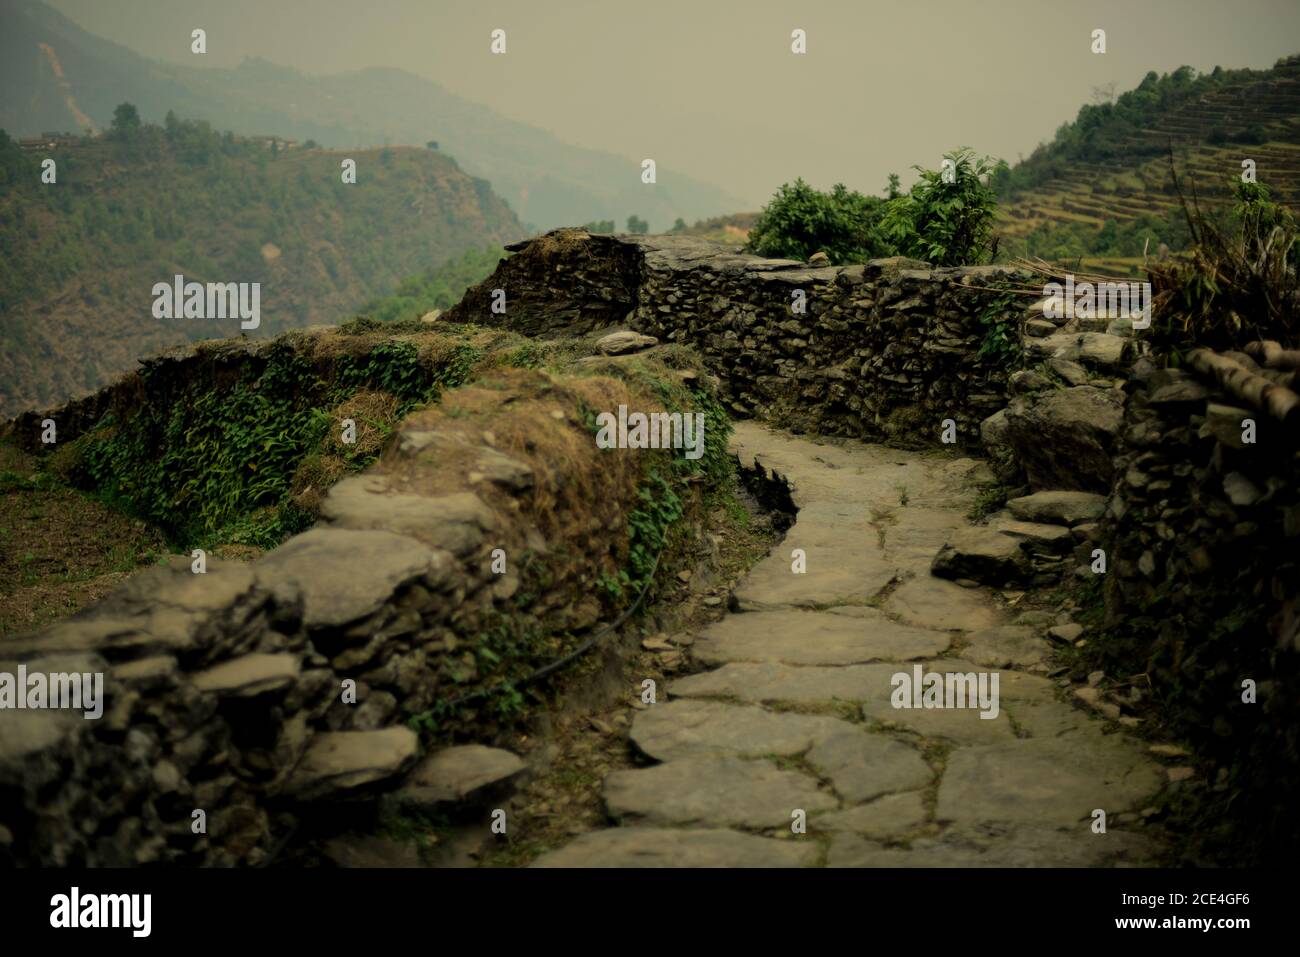 Stoned Weg in der landwirtschaftlichen Dorf Sidhane auf Panchase Bergregion, Nepal, wo die Gemeinschaft betreibt Ökotourismus. Stockfoto